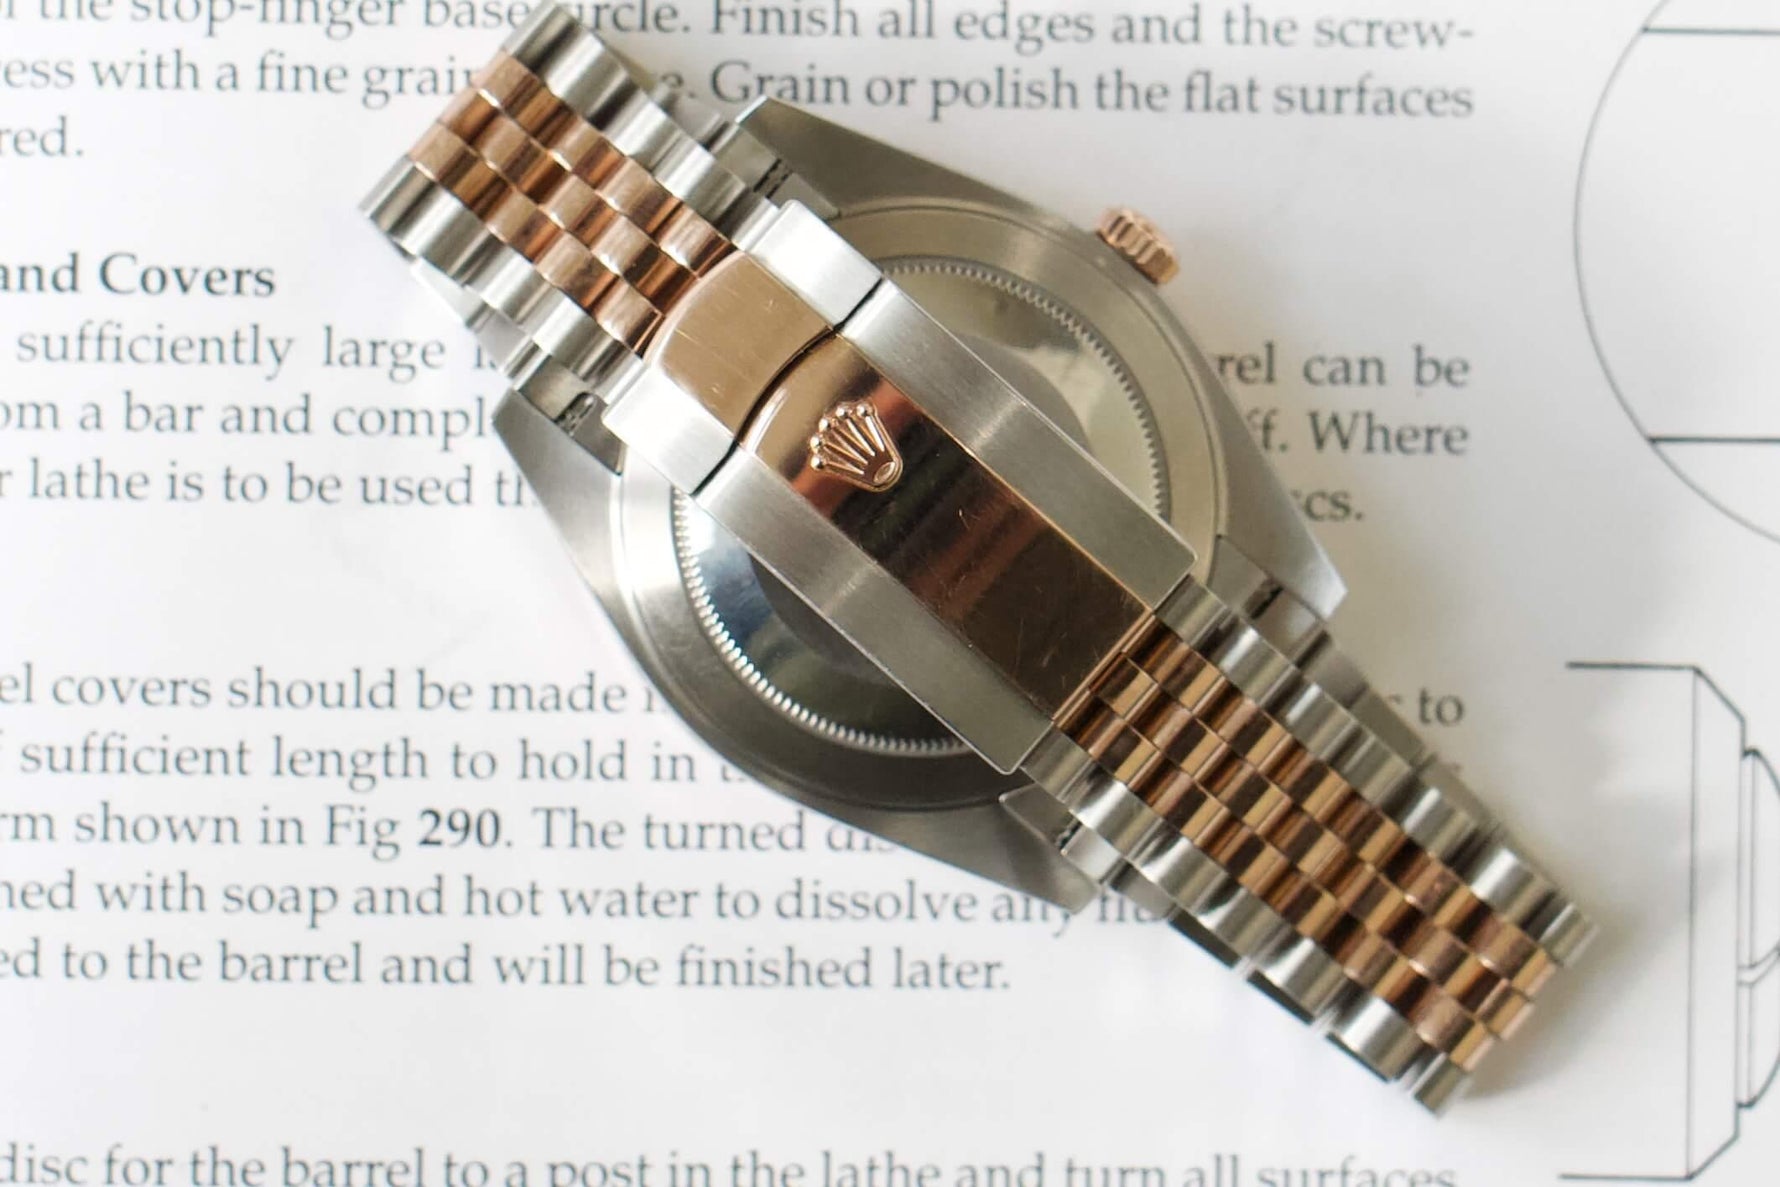 SOLDOUT: Rolex 126331 Datejust II Wimbeldon Two Tone Jubilee Steel Mens Watch 2021 Papers - WearingTime Luxury Watches